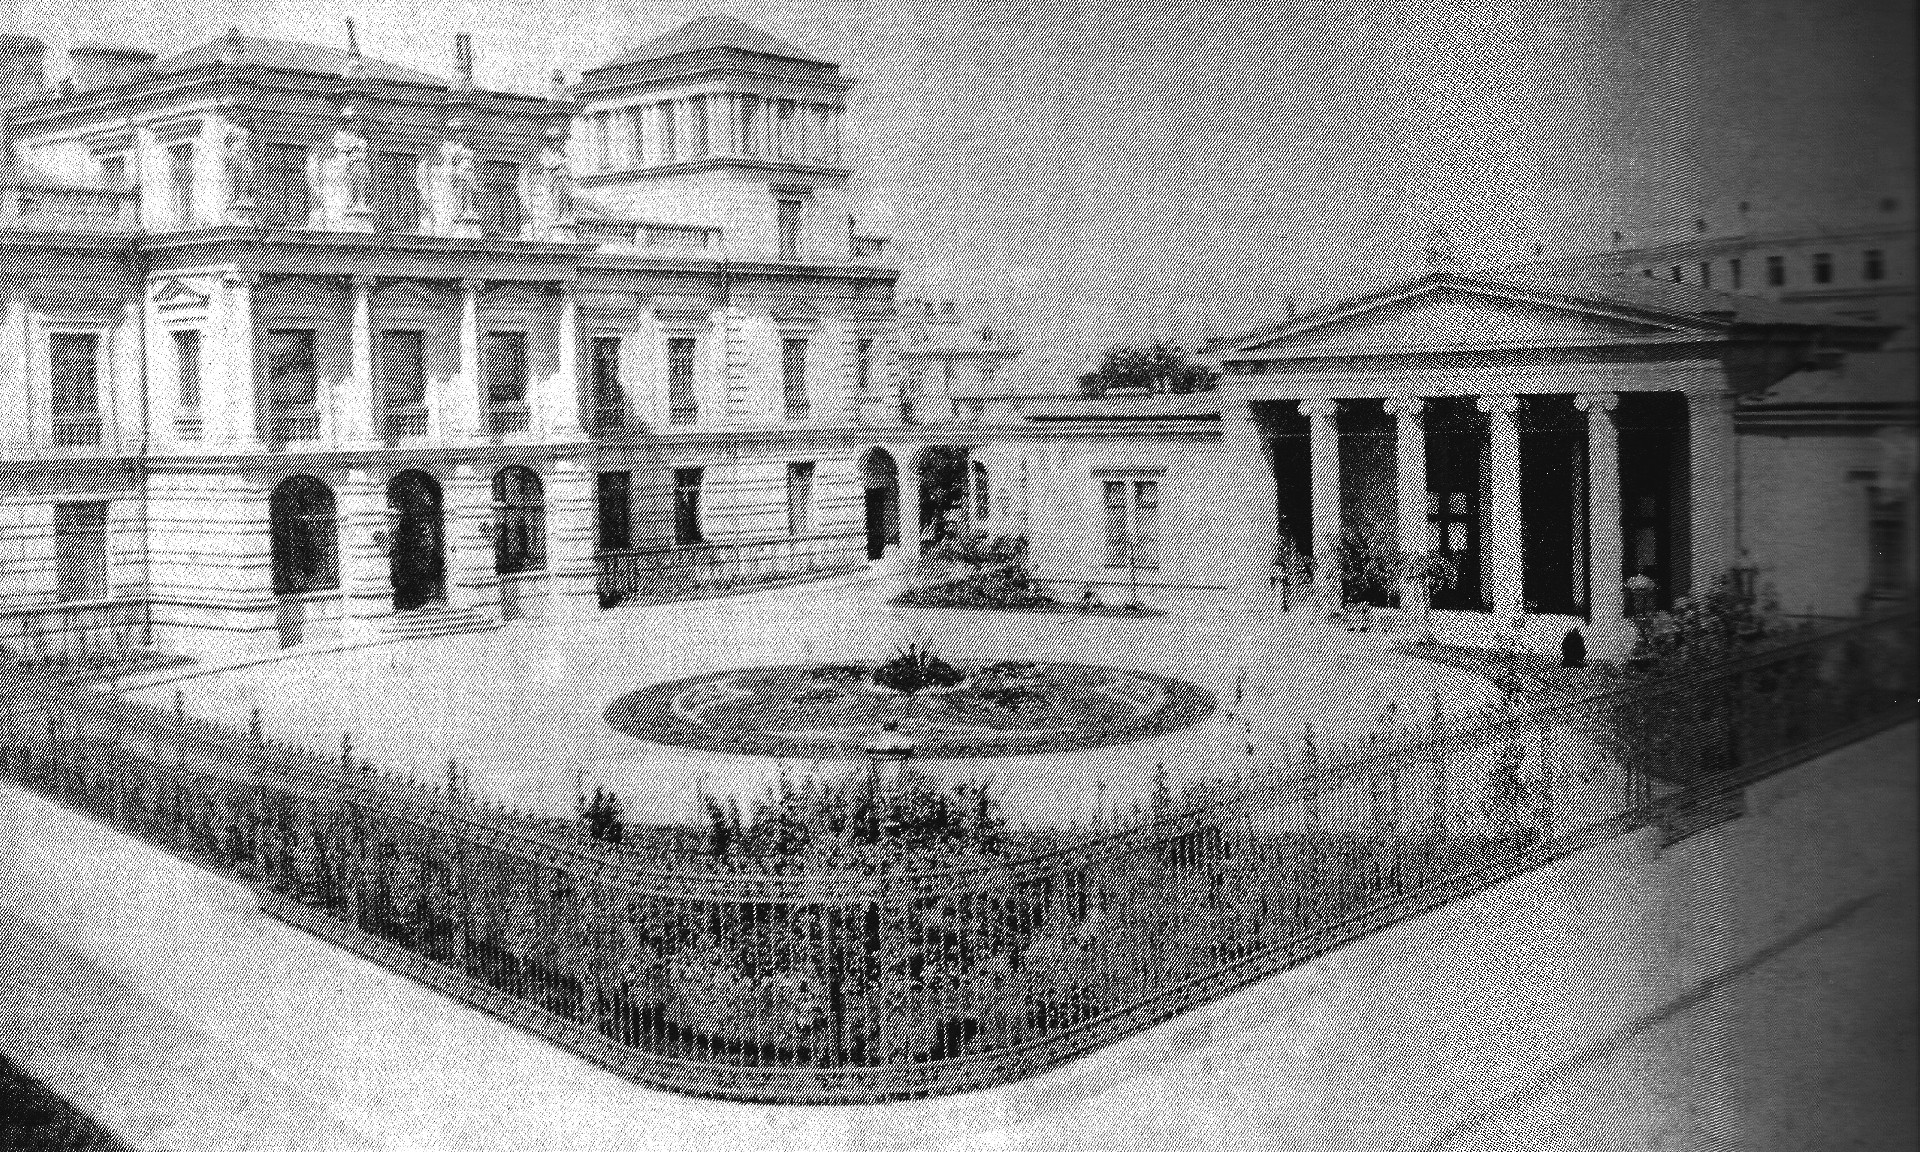 Palatul Stirbey, Bucuresti, aprox. 1890